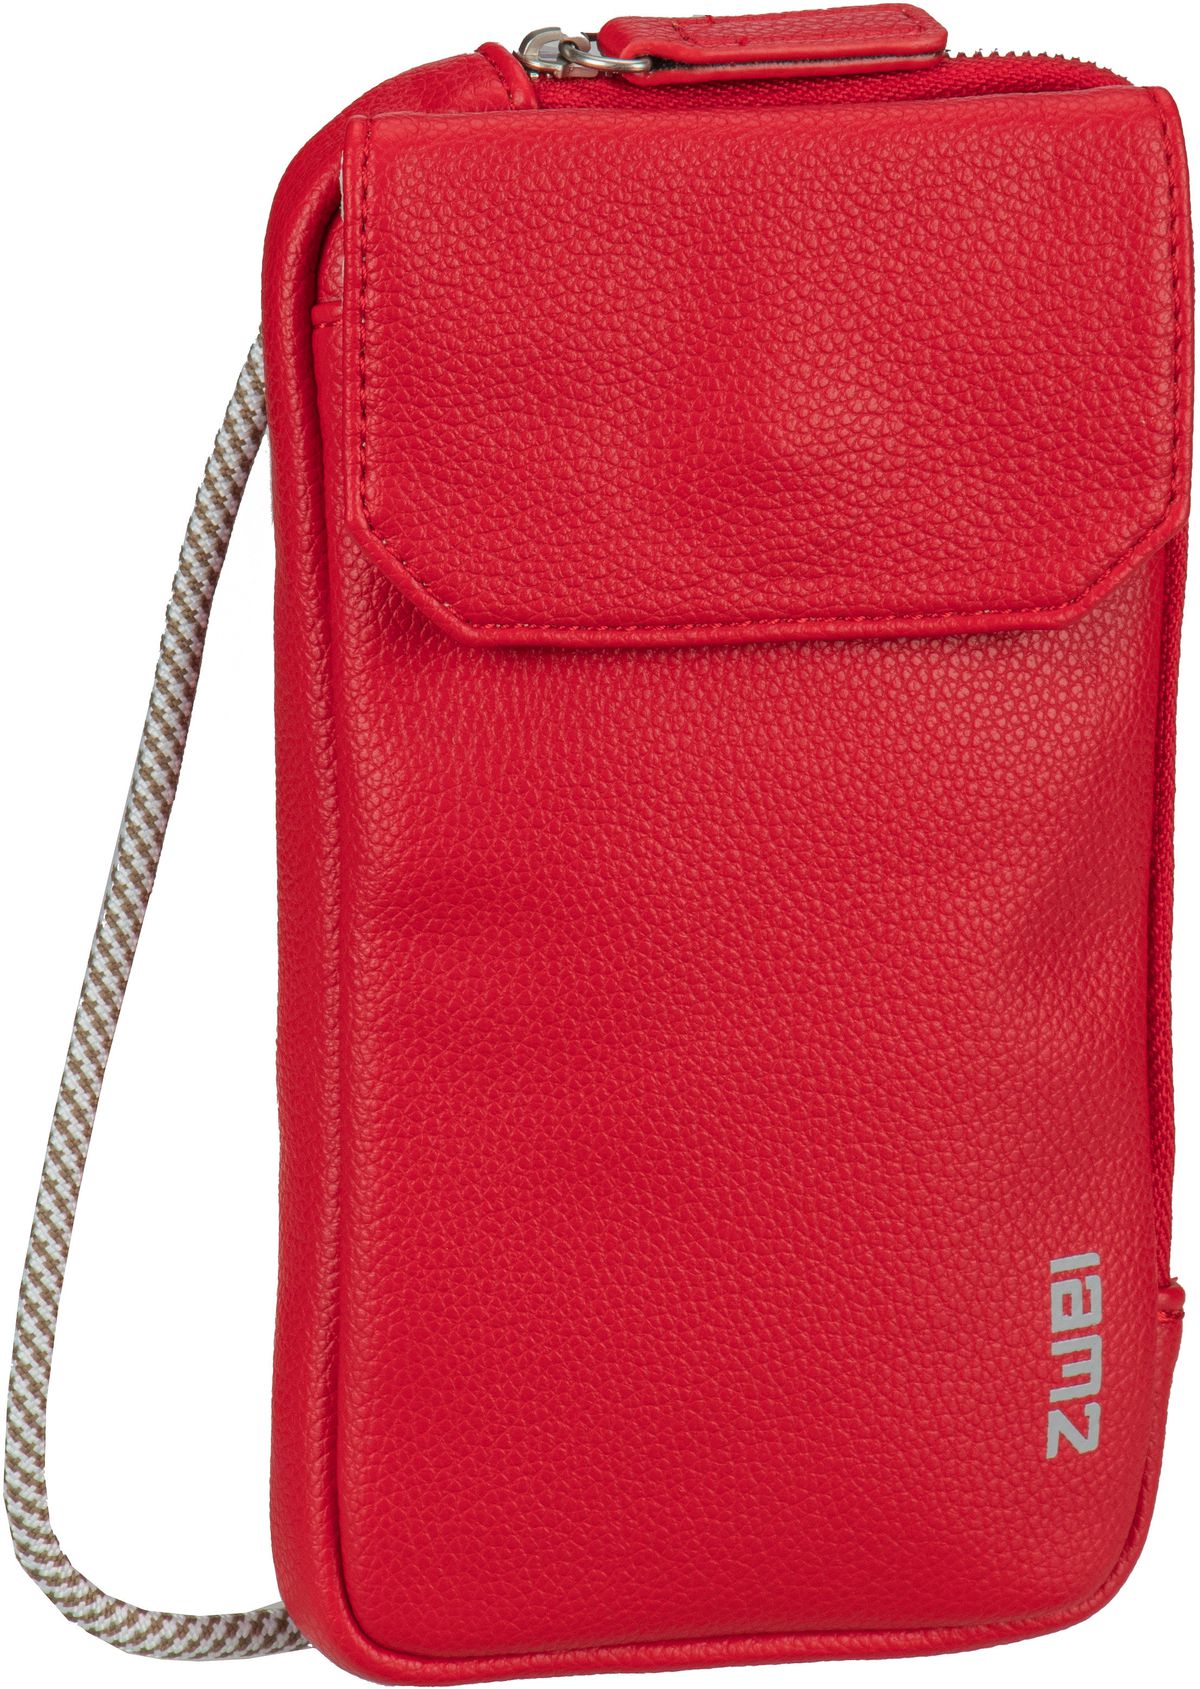 zwei Mademoiselle Phone Bag MP30  in Rot (0.2 Liter), Umhängetasche